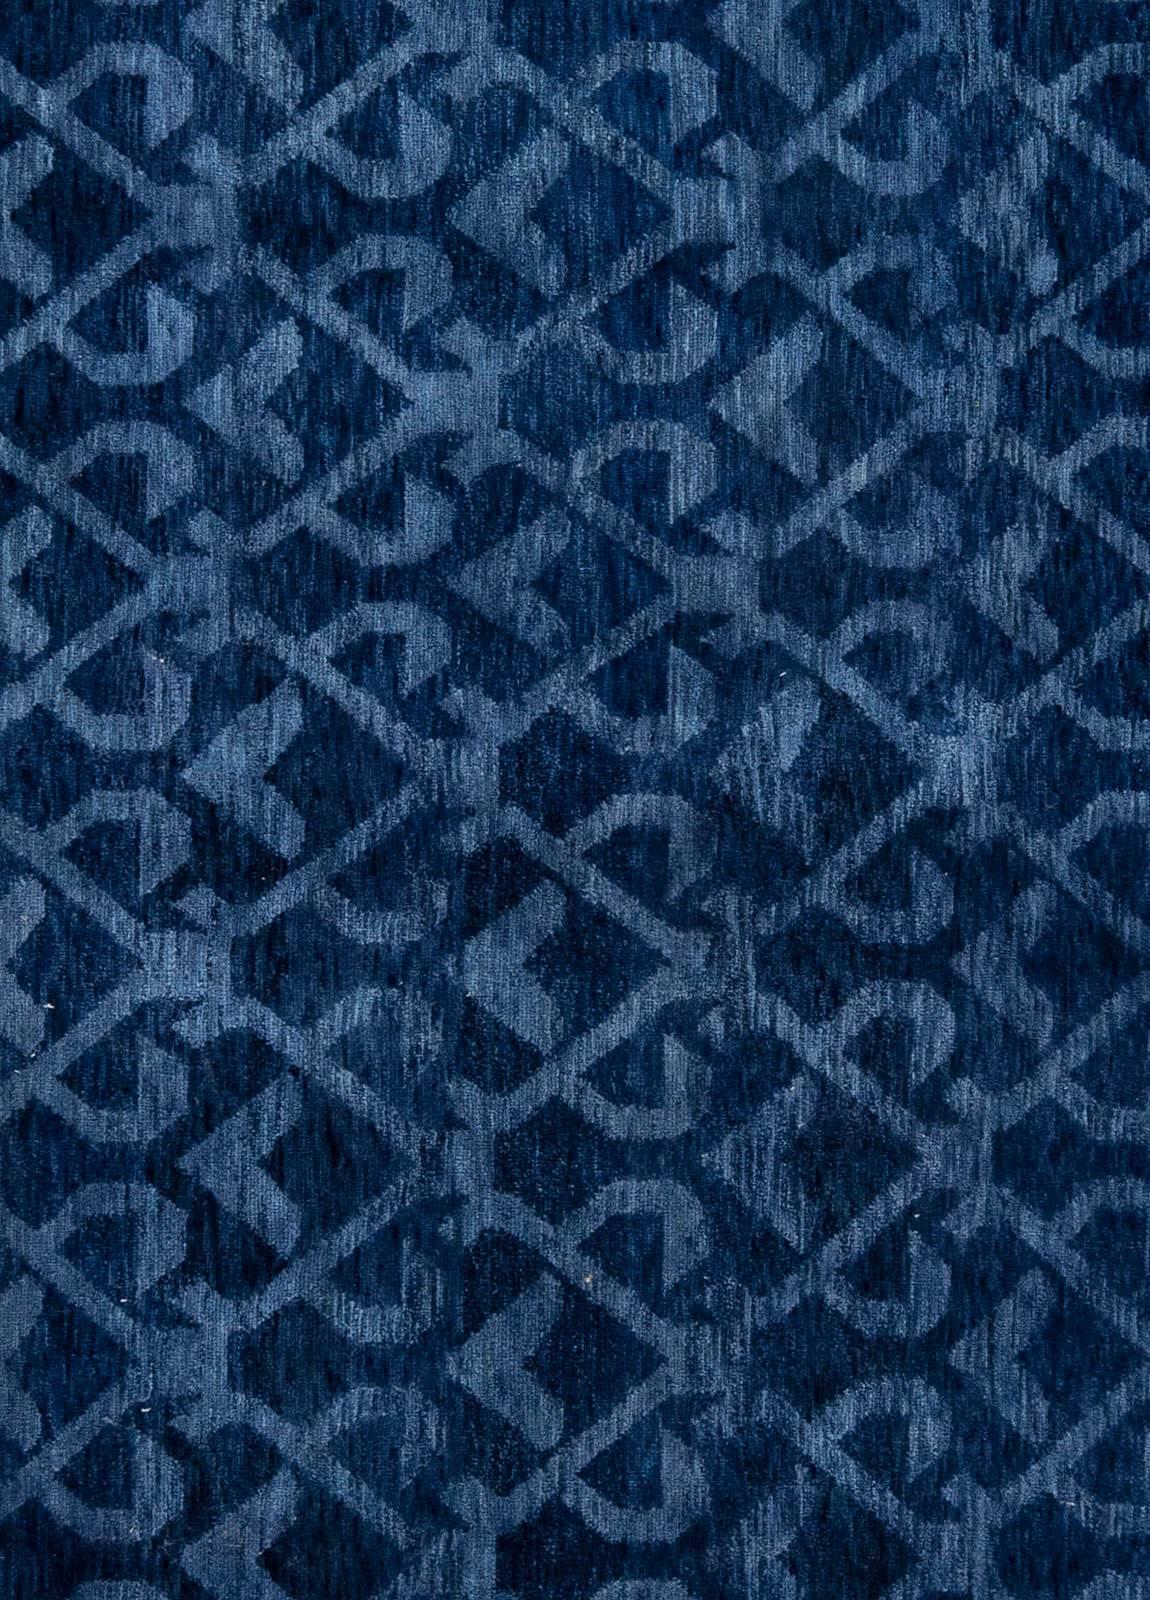 Contemporary pashmina euro blue rug by Doris Leslie Blau.
Size : 10'0